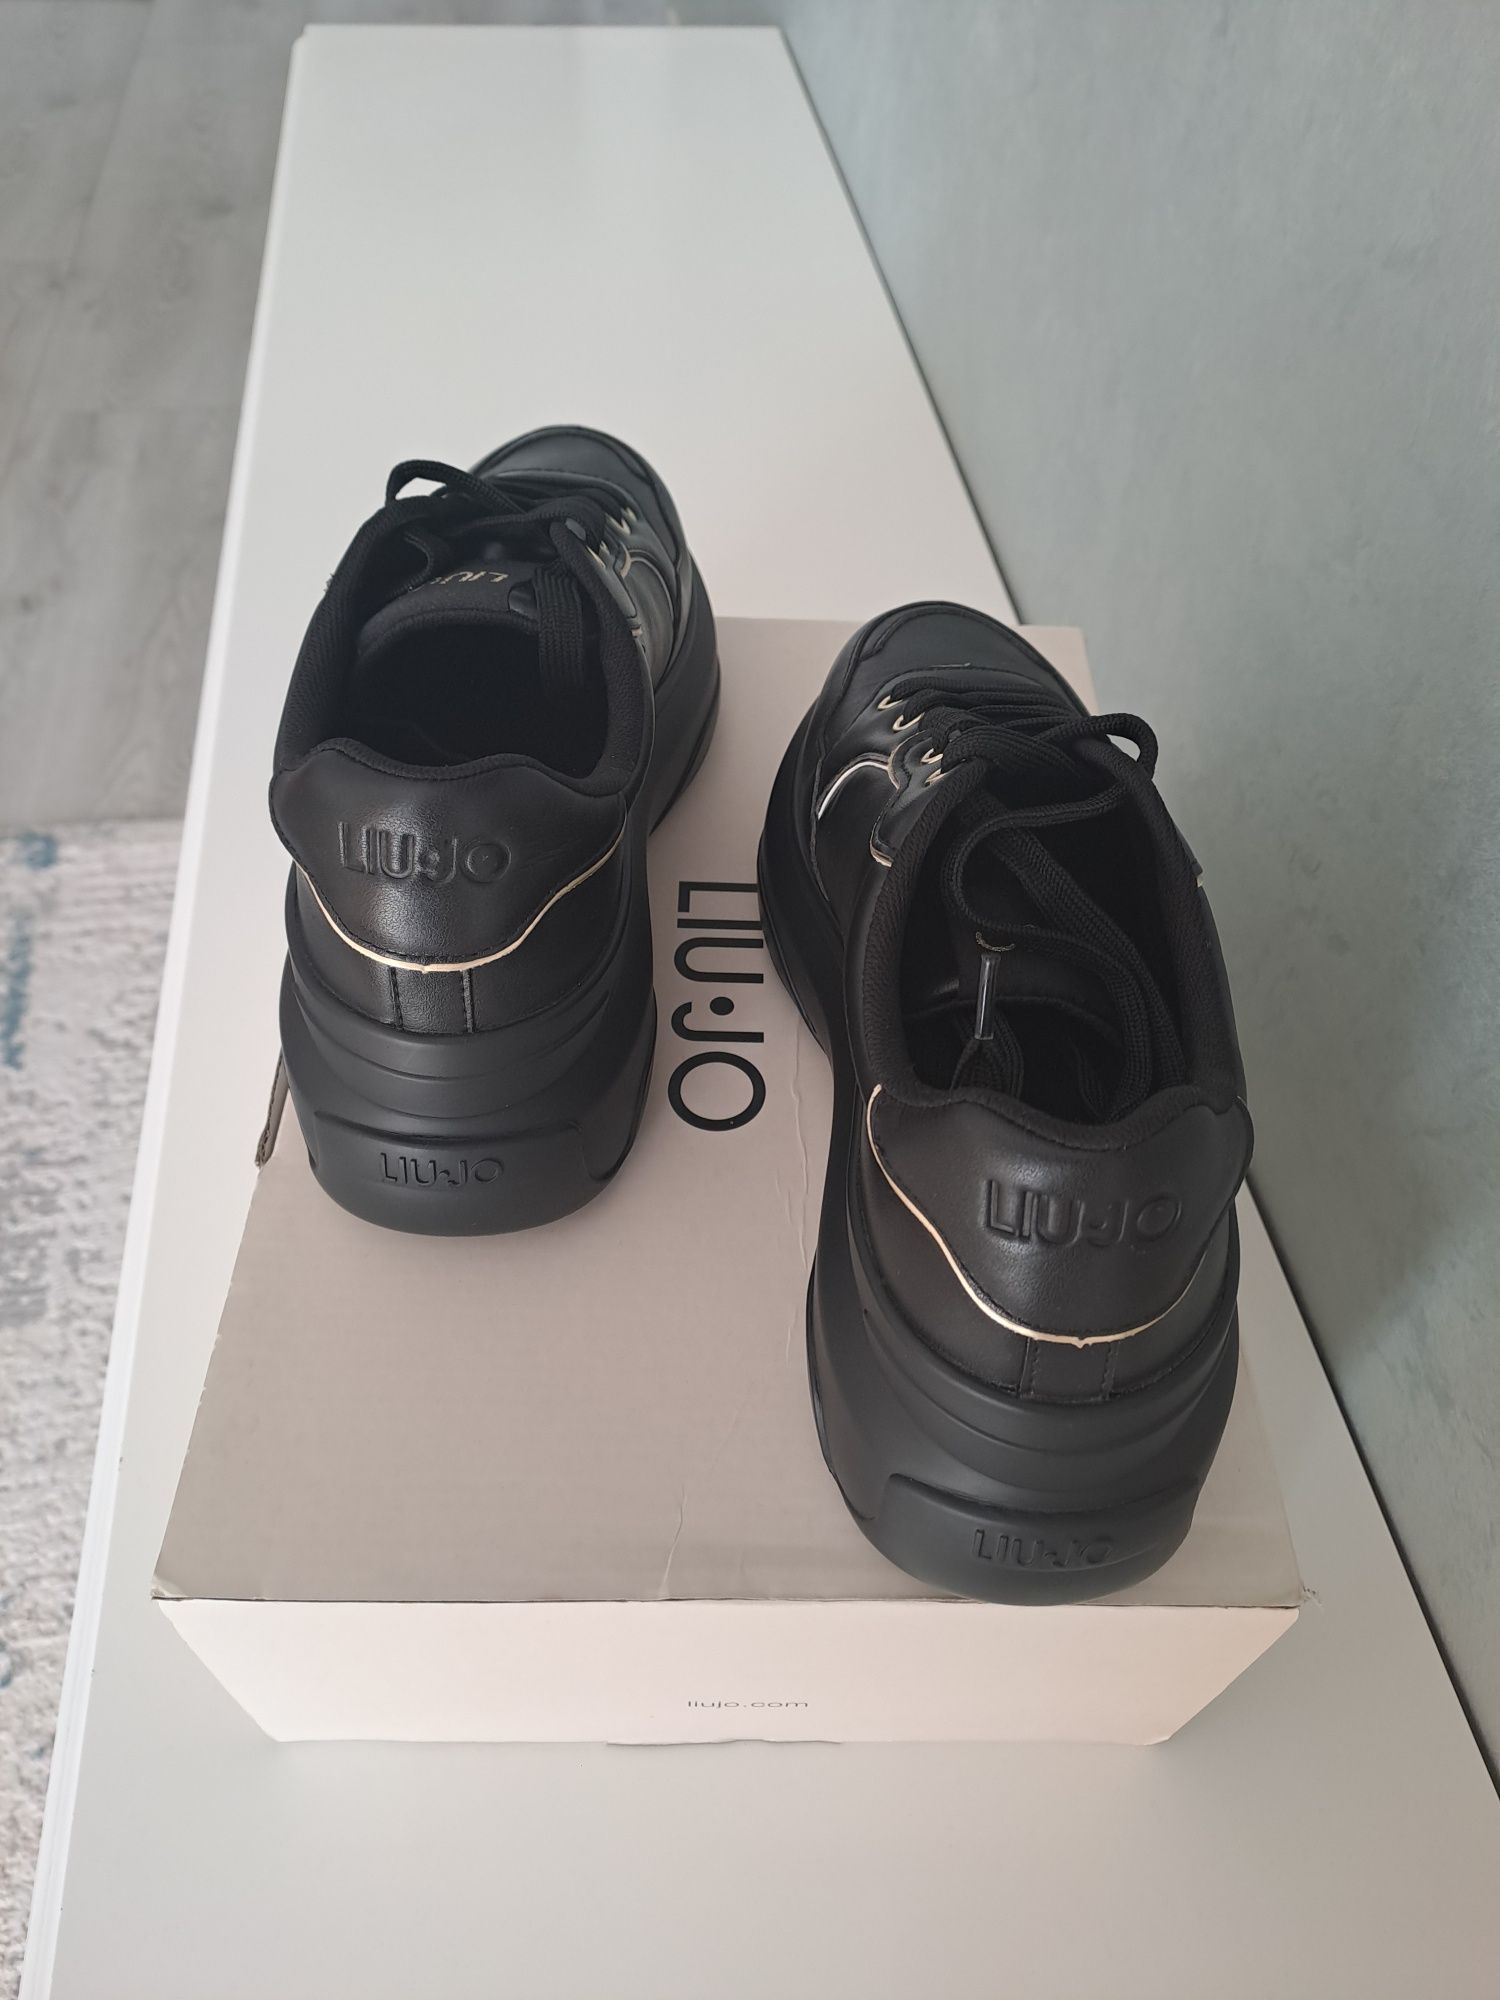 Sneakers june 02 Liu Jo- noi